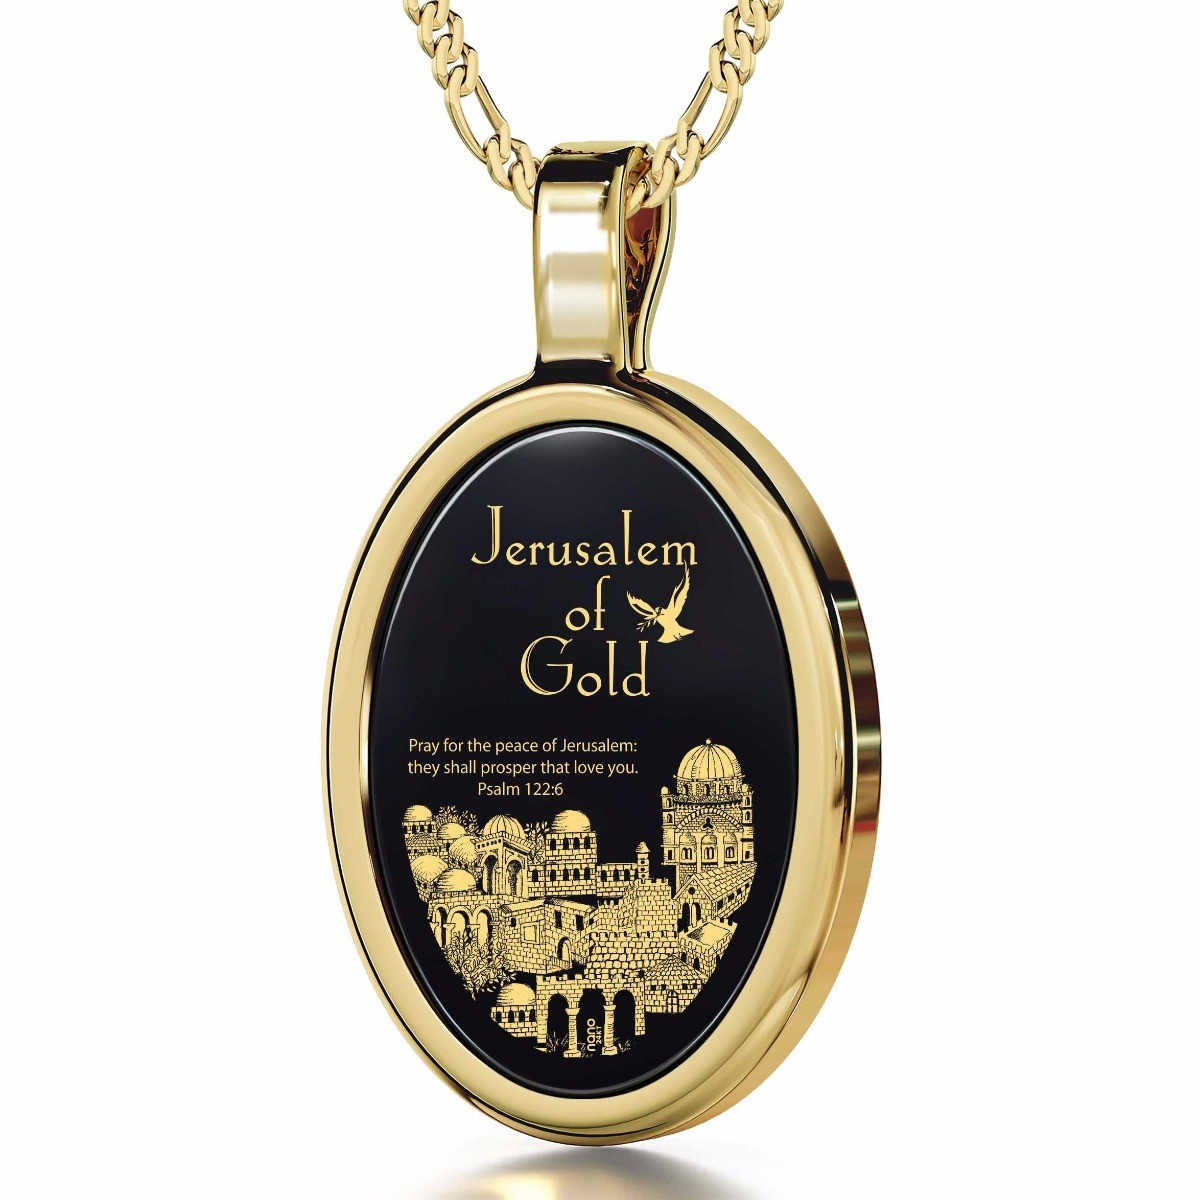 Nano 14K Gold and Onyx Framed Oval “Jerusalem of Gold” Necklace with 24K Gold Micro-Inscription - 1